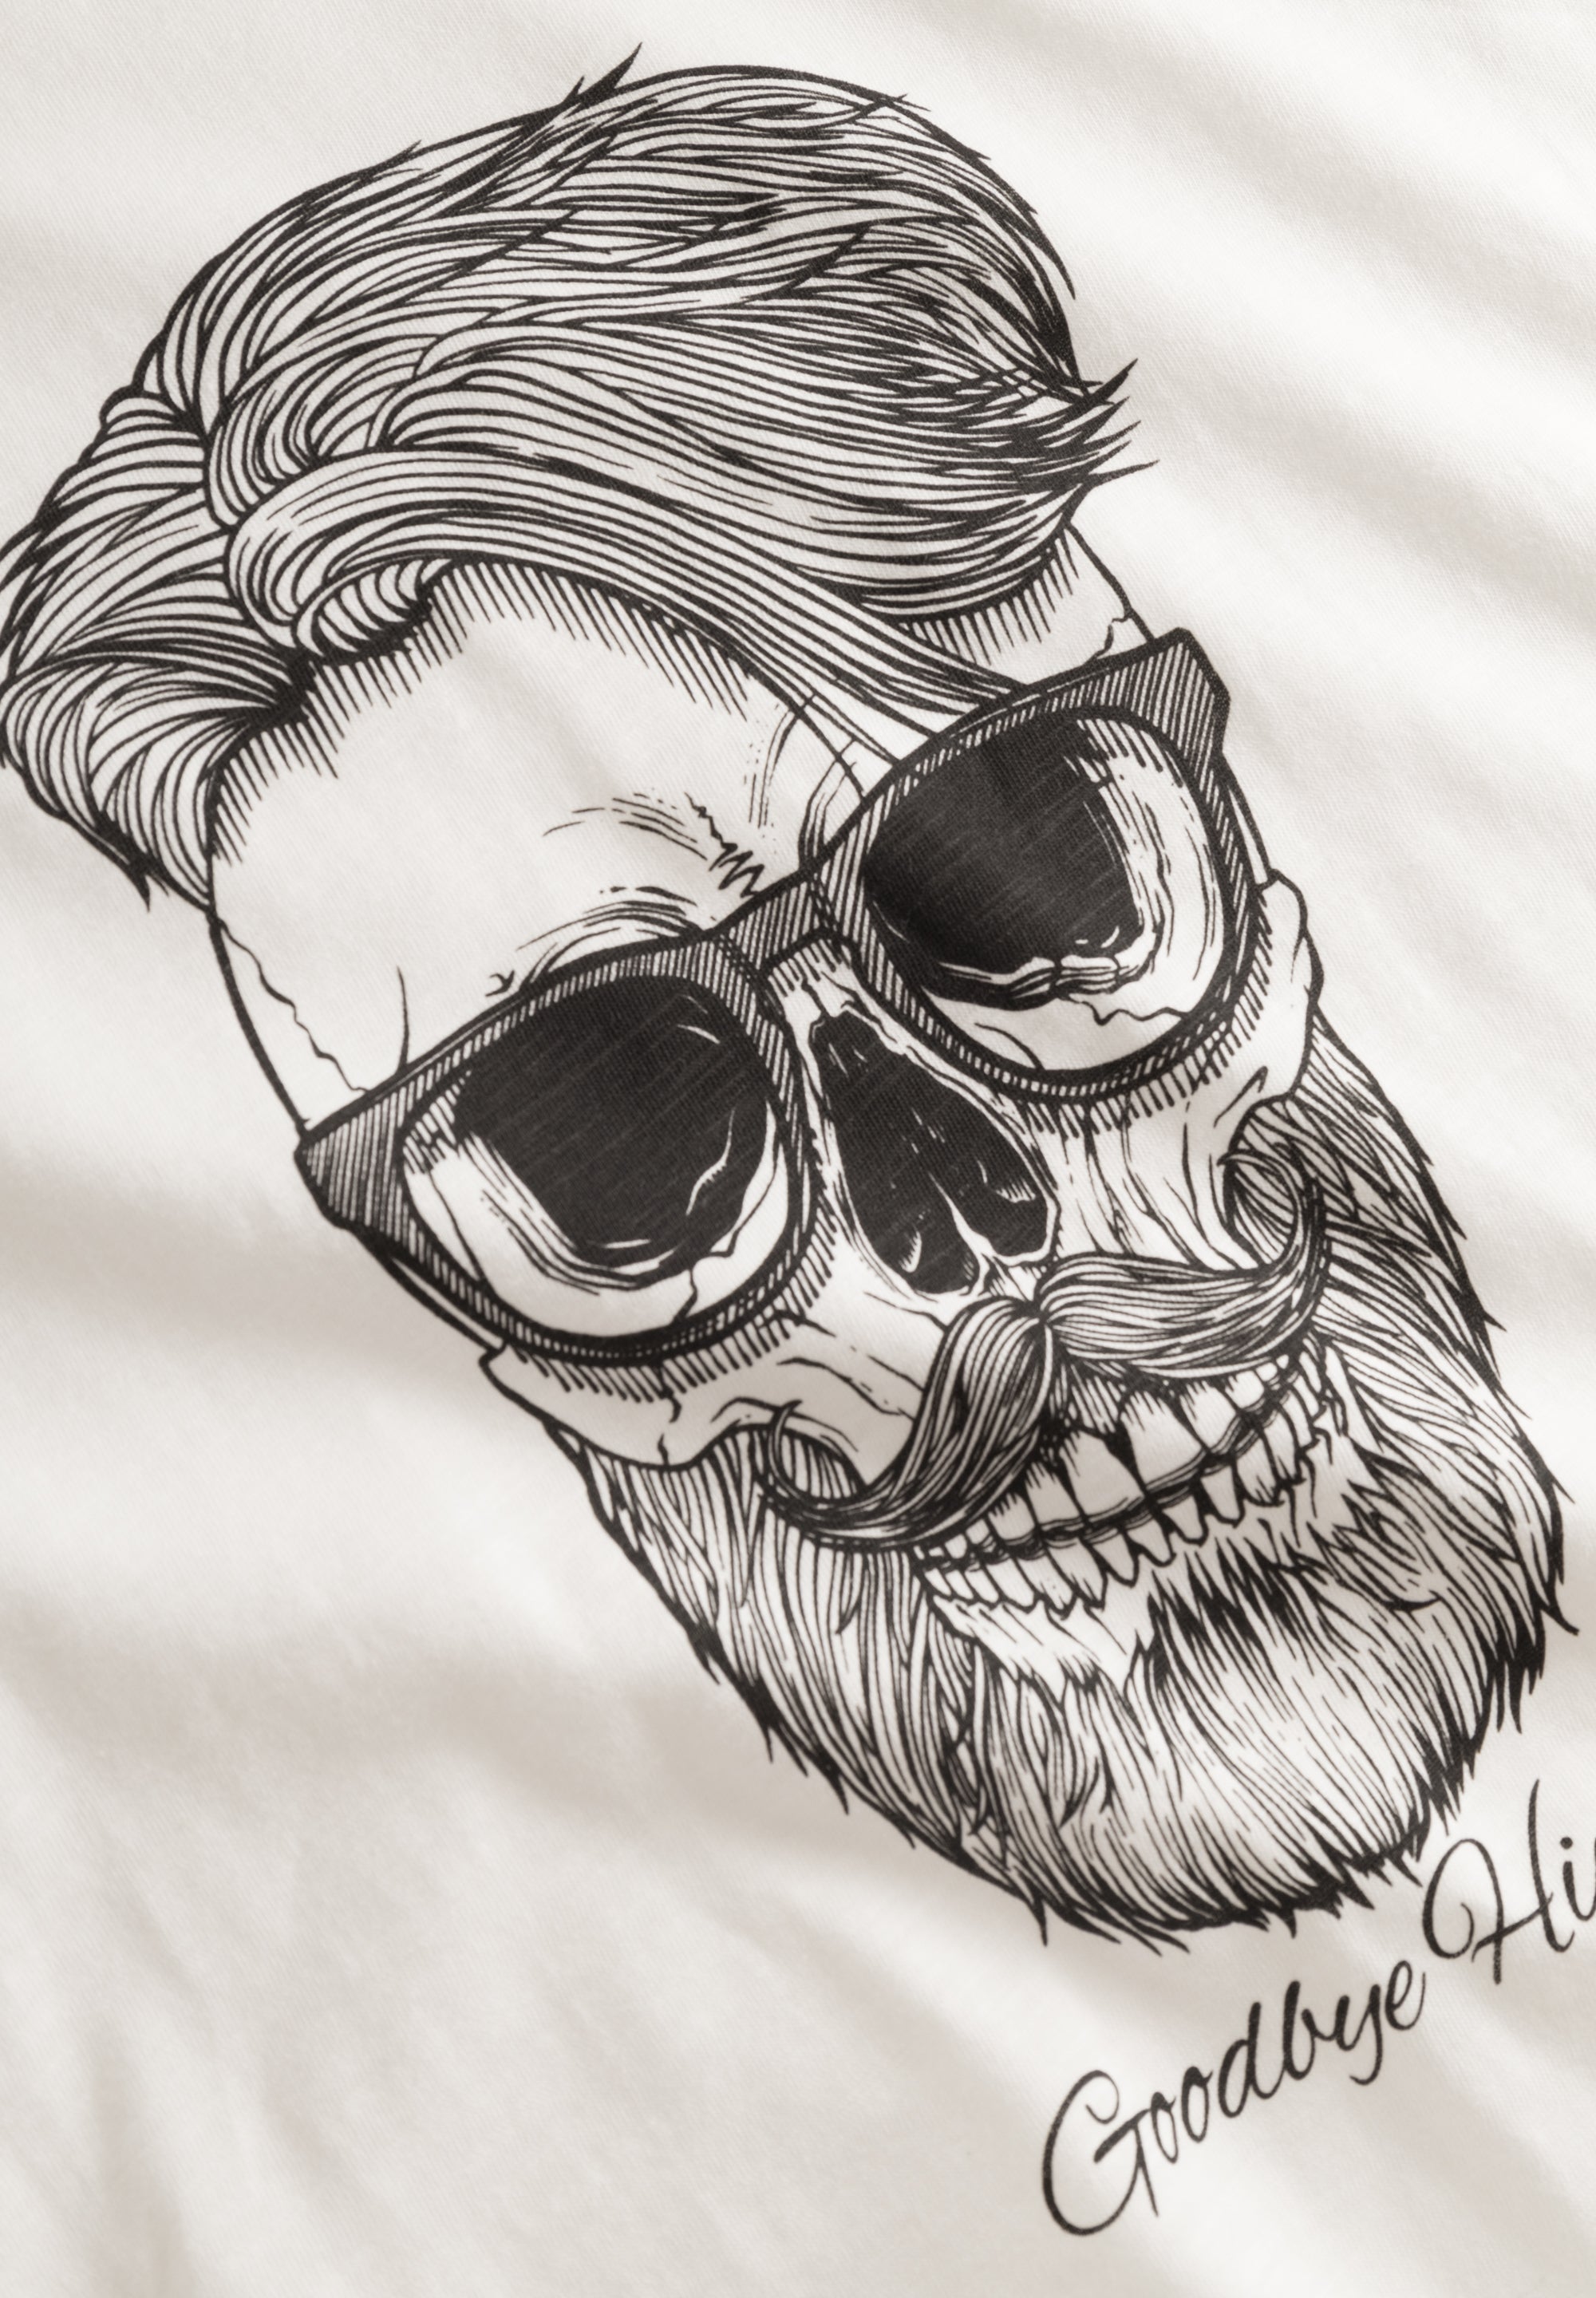 DERBE Hipster Herren T-Shirt Off White Weiß